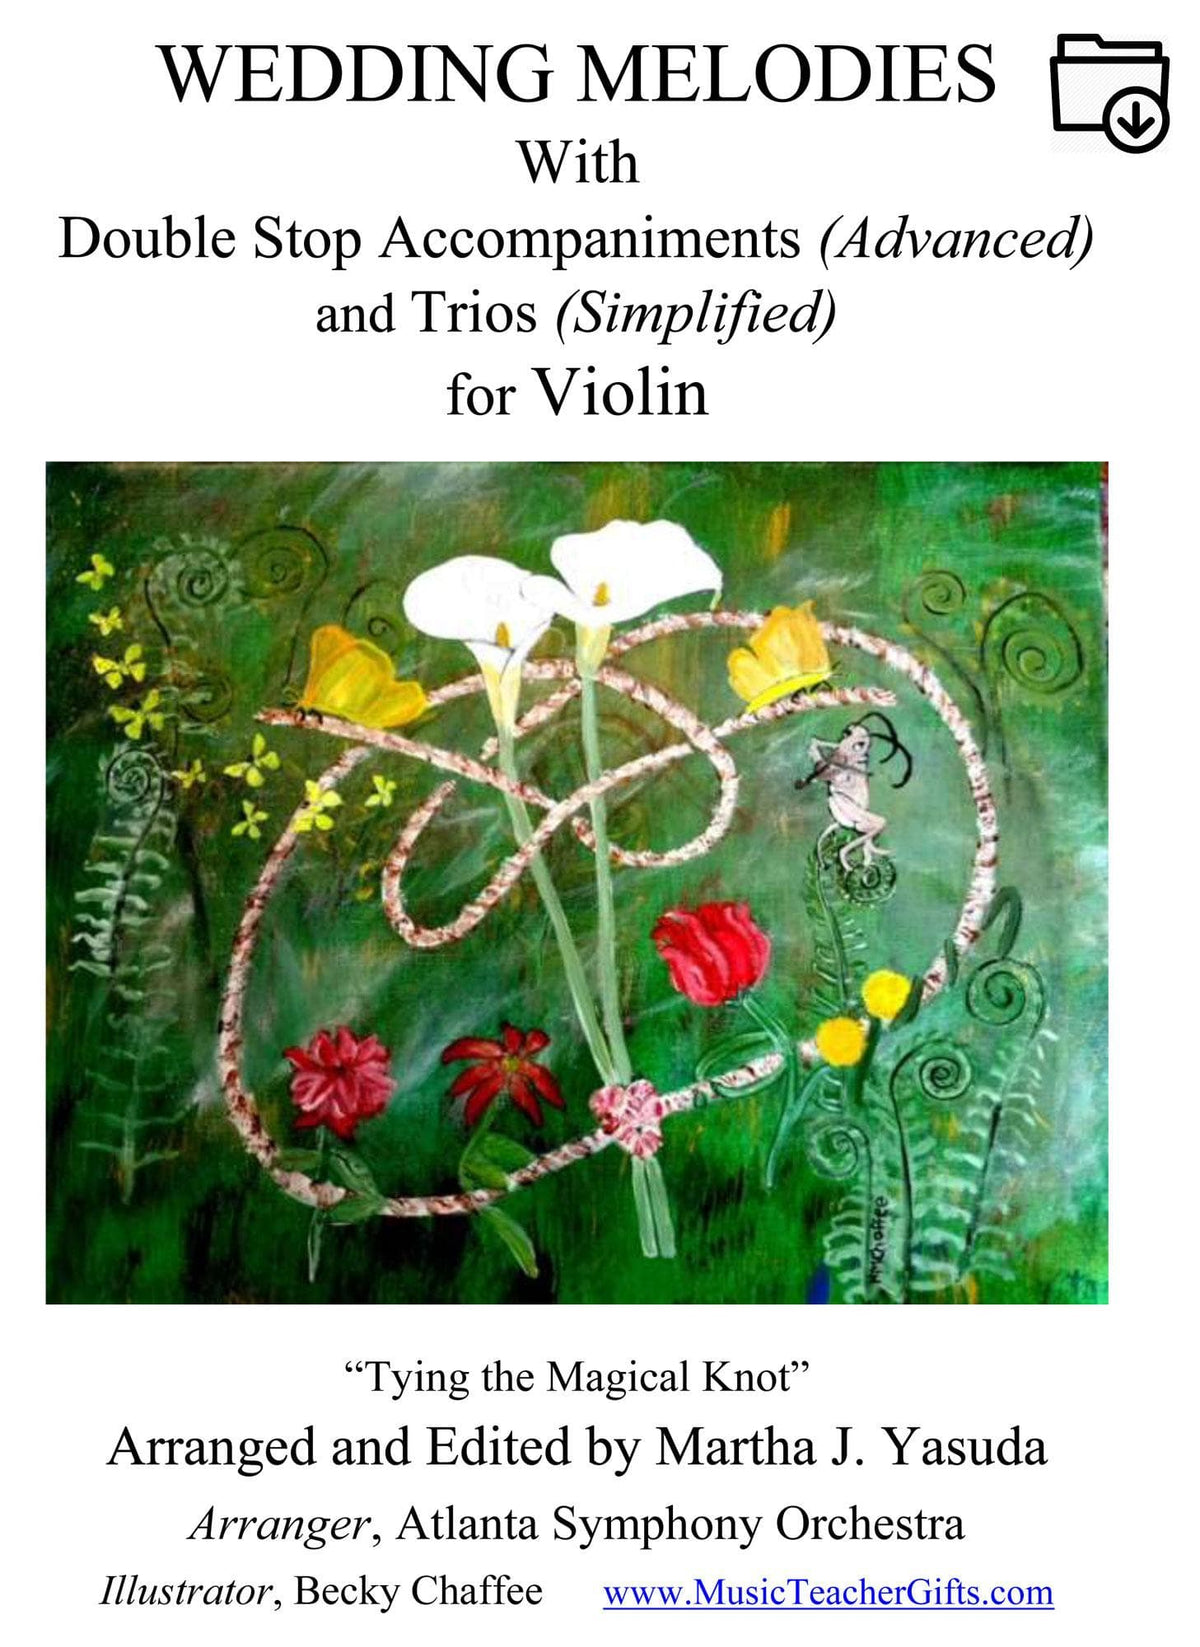 Yasuda, Martha - Wedding Melodies For Violin, Duet or Trio - Digital Download